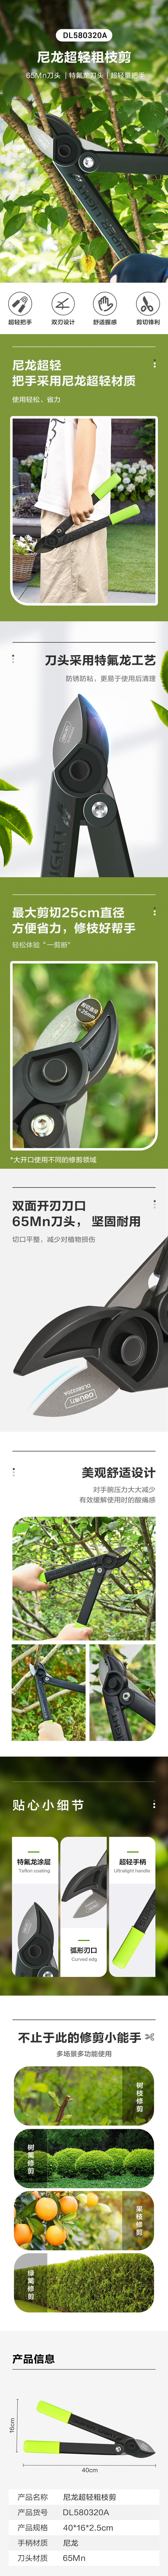 得力工具 DL580320A 尼龙超轻粗枝剪(绿)-尺寸:41cm